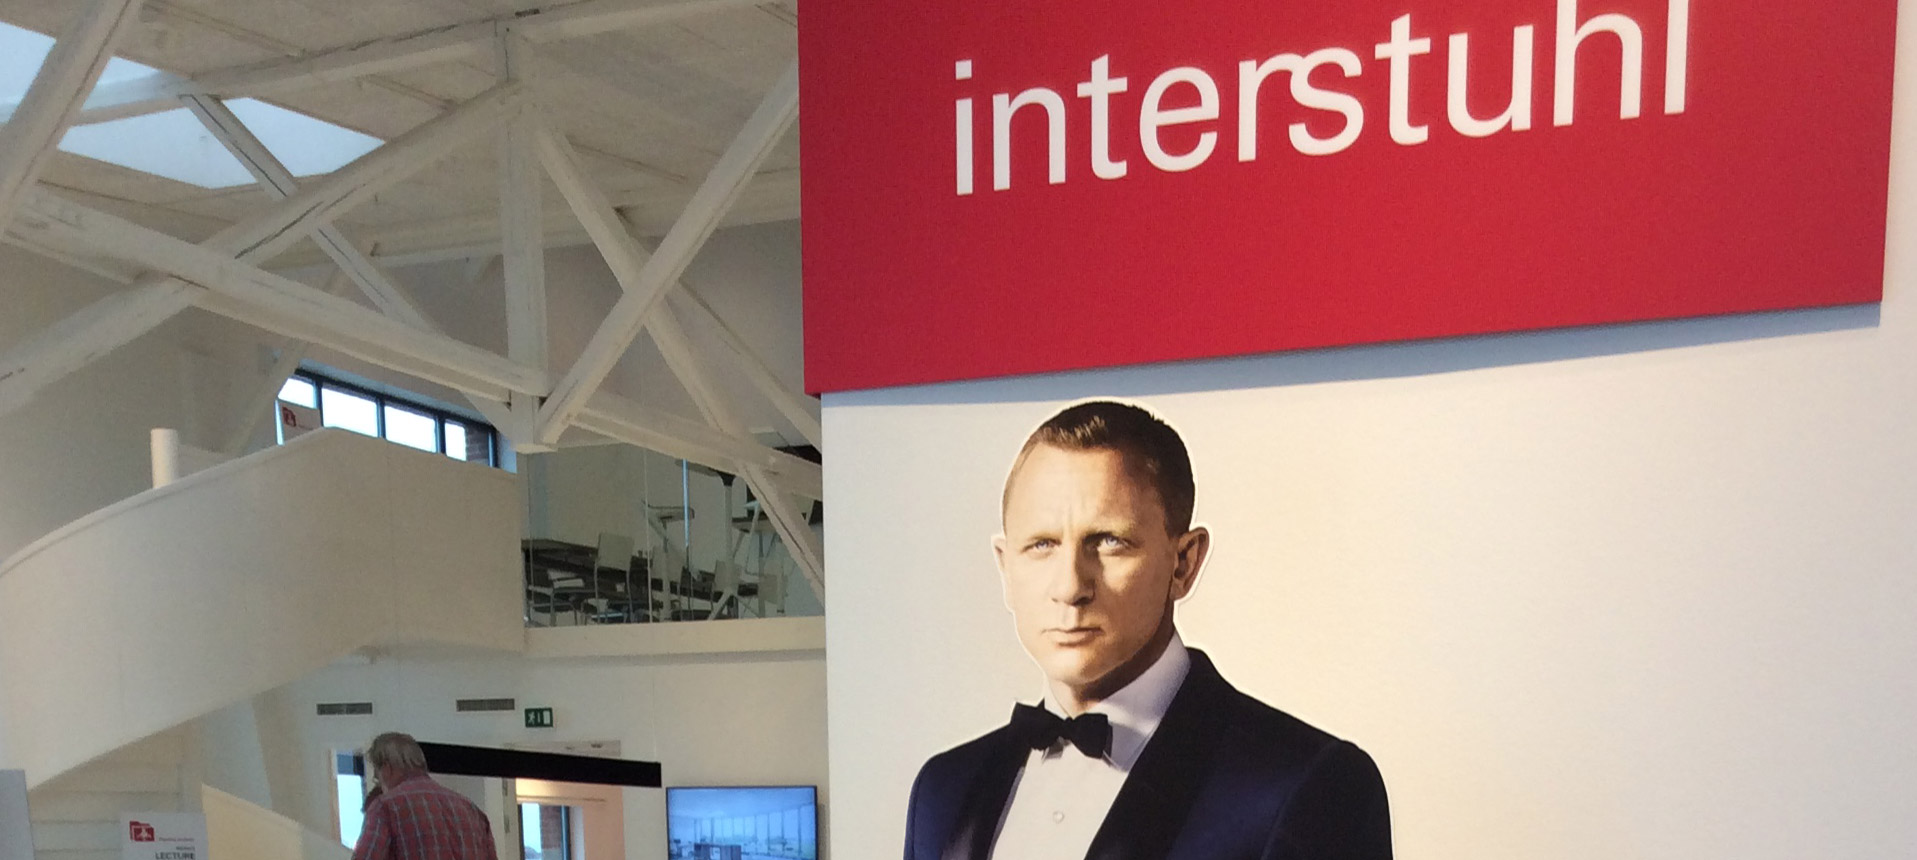 James Bond Event in Kopenhagen